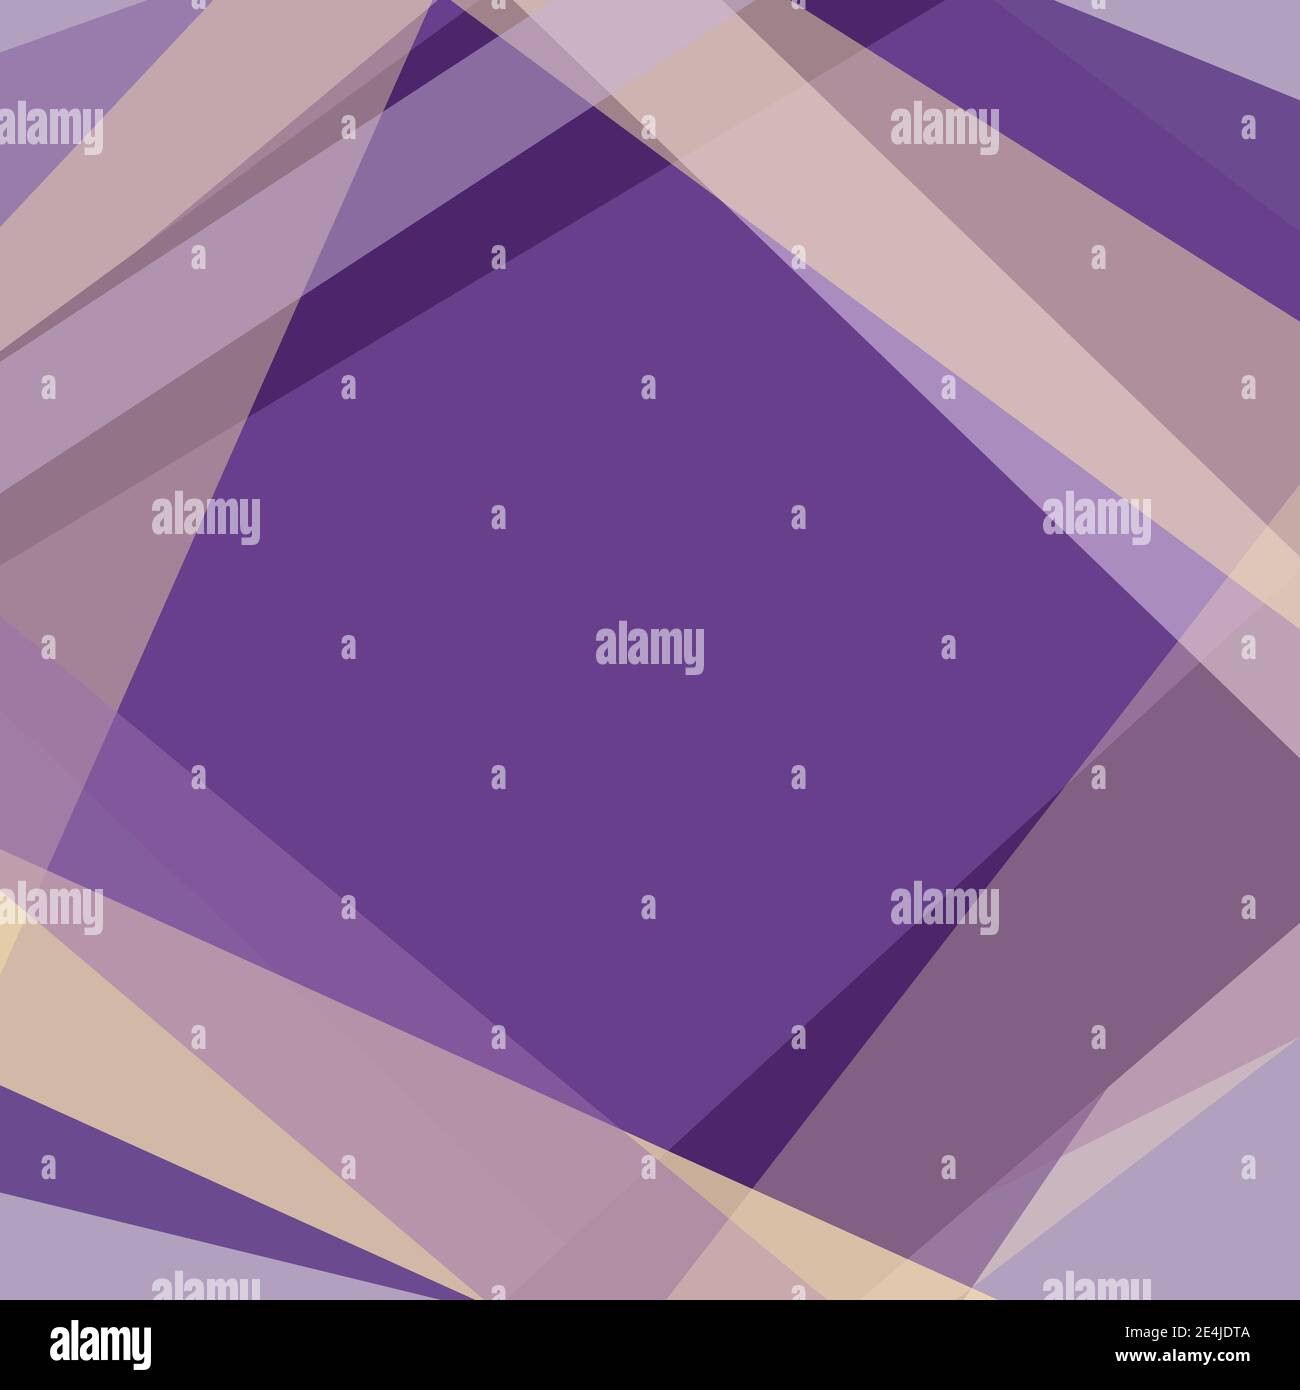 Geometrischer Rahmen. Hintergrund mit violetten und gelben Formen komponieren Raute. Abstrakte Vorlage mit Platz für das Kopieren von Bucheinband, Mockup. Vektor EPS10 Stock Vektor